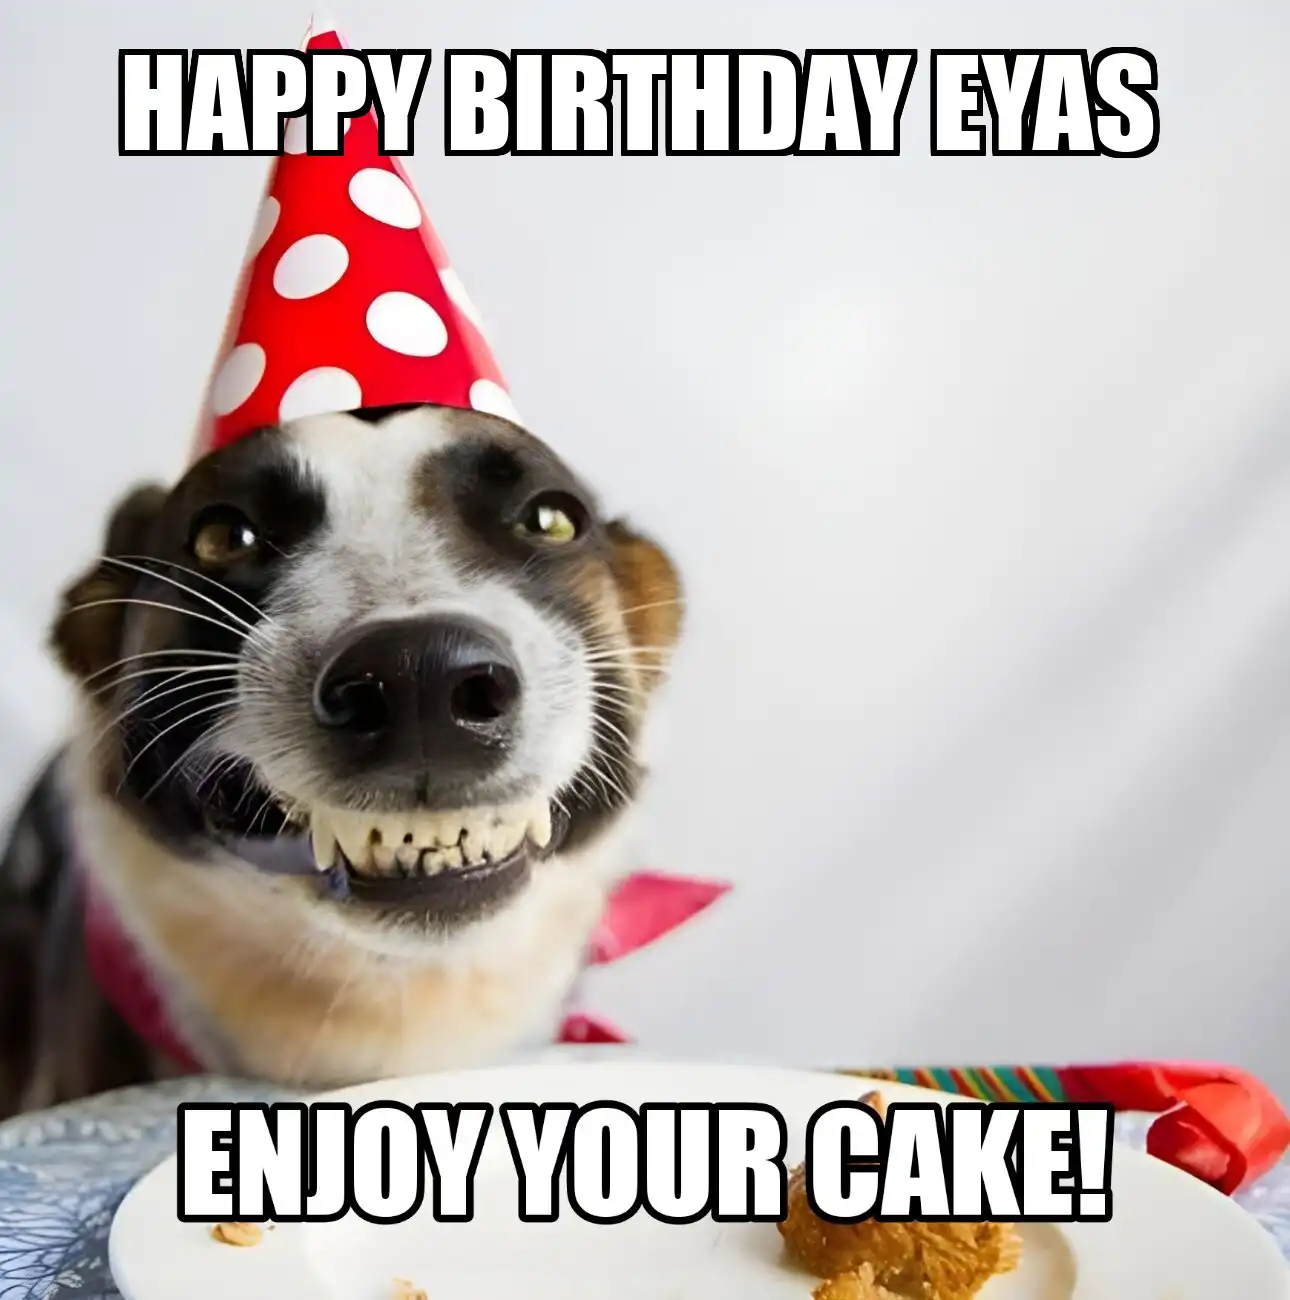 Happy Birthday Eyas Enjoy Your Cake Dog Meme